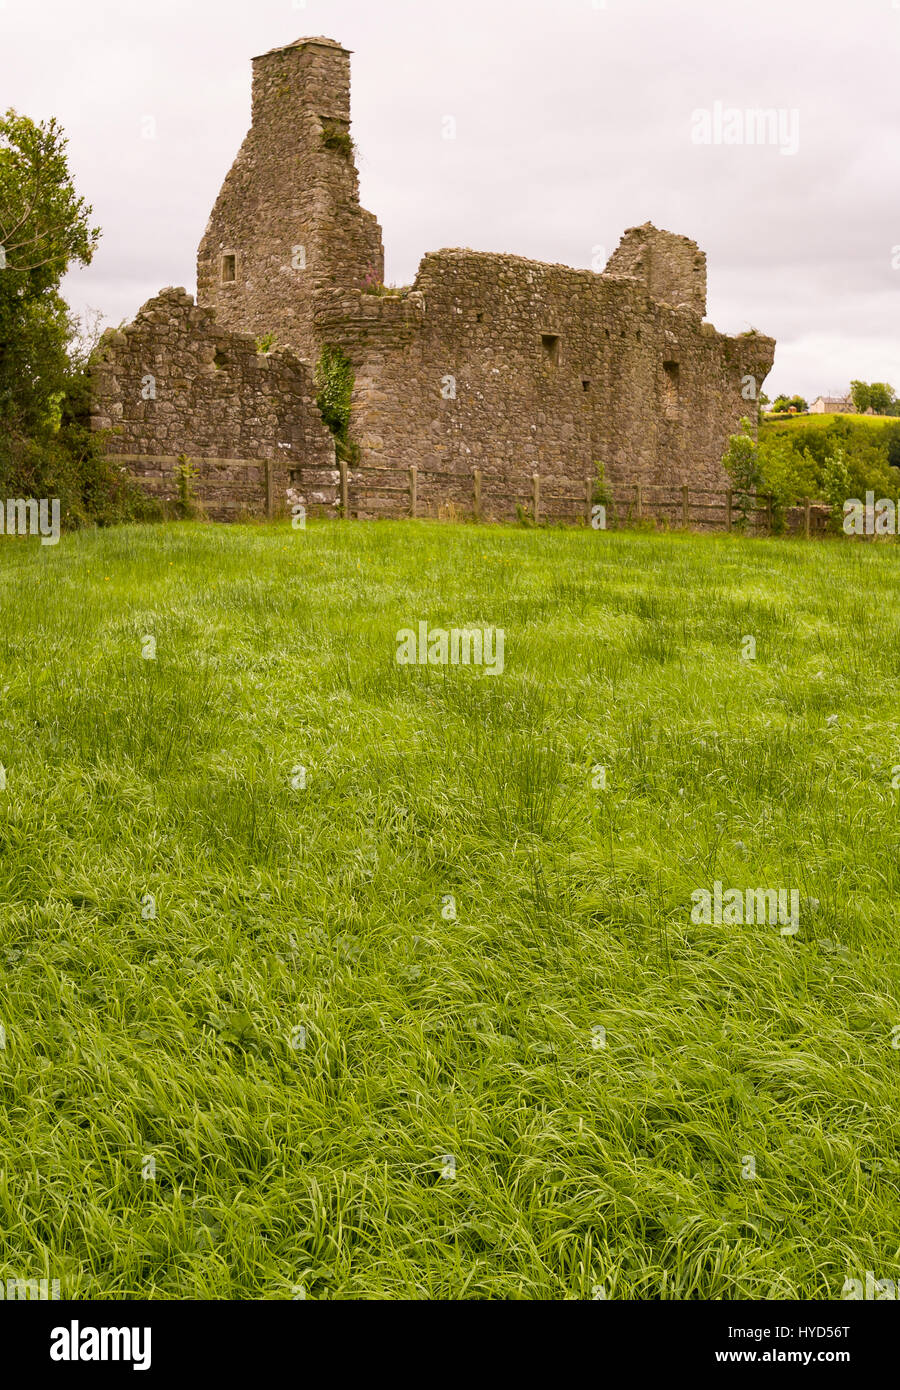 TULLY CASTLE, IRLANDA DEL NORD - rovine del castello di Tully, vicino a Enniskillen, sulla parte inferiore del Lough Erne. Tully Castello, costruito all'inizio del seicento, in County Fermanagh, nei pressi del villaggio di Blaney. Foto Stock